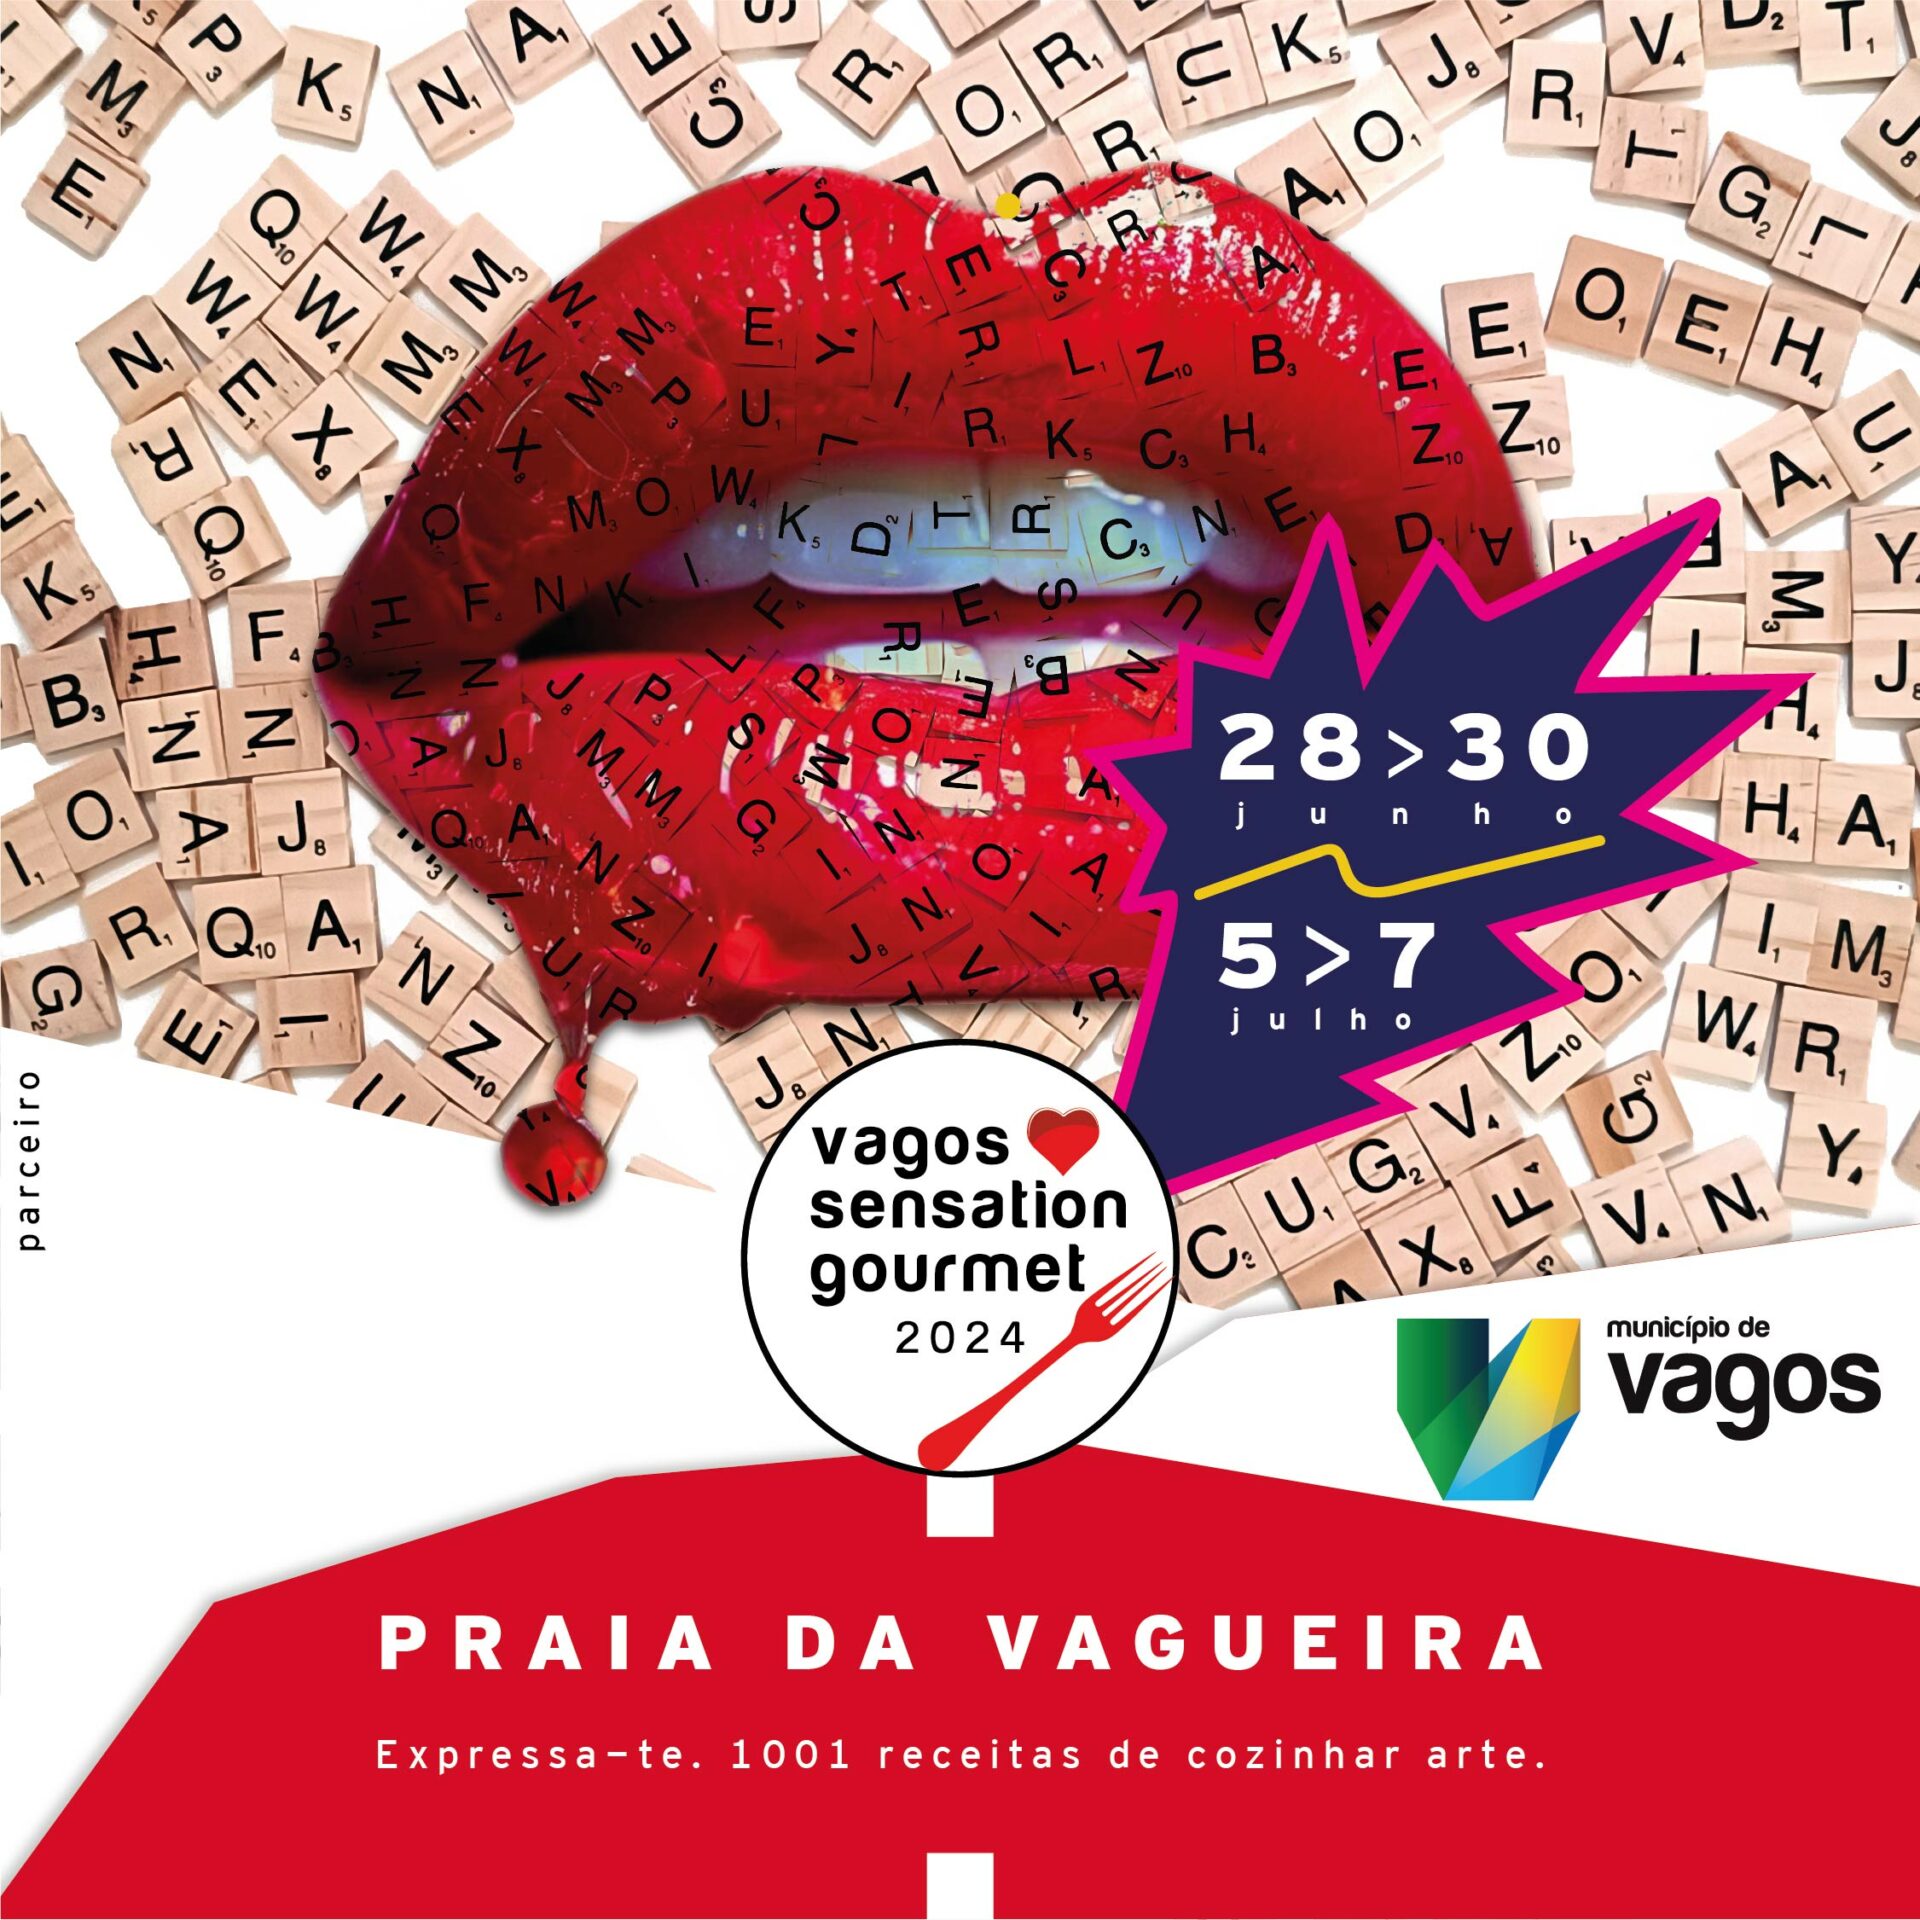 Costa Verde at Vagos Sensation Gourmet 2024!